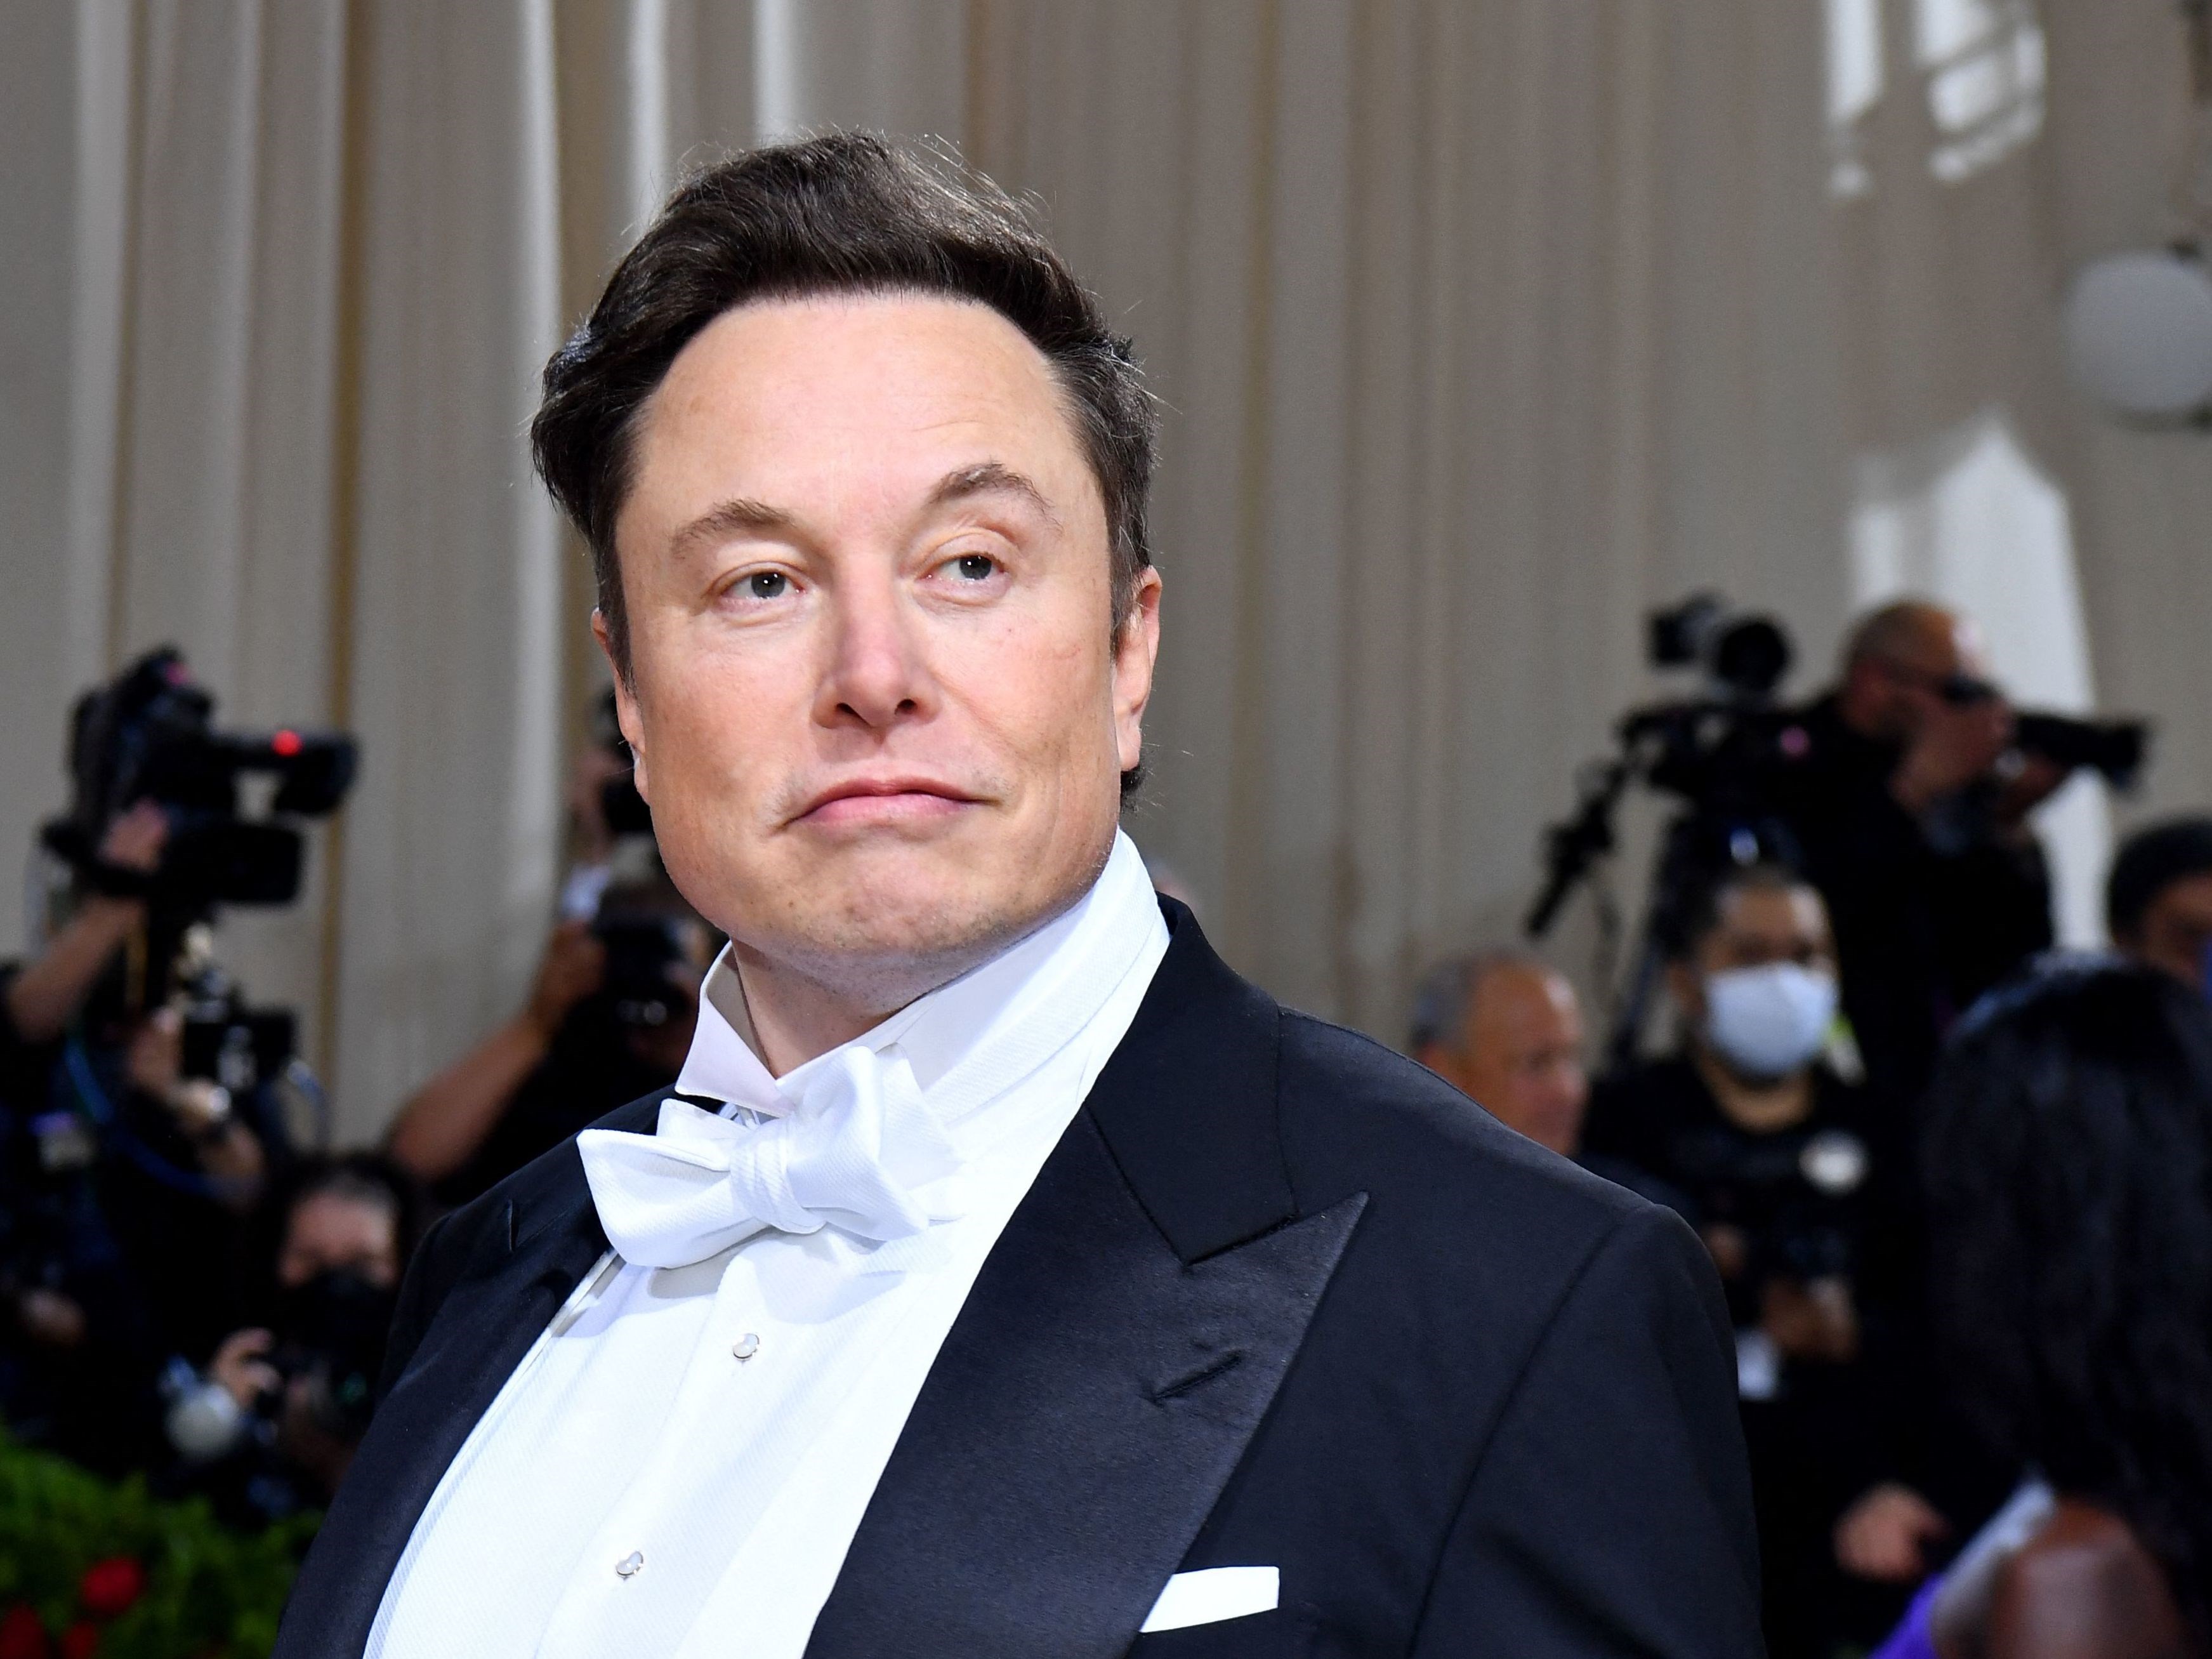 Elon Musk: Bana para kaybettirse bile istediğimi söyleyeceğim